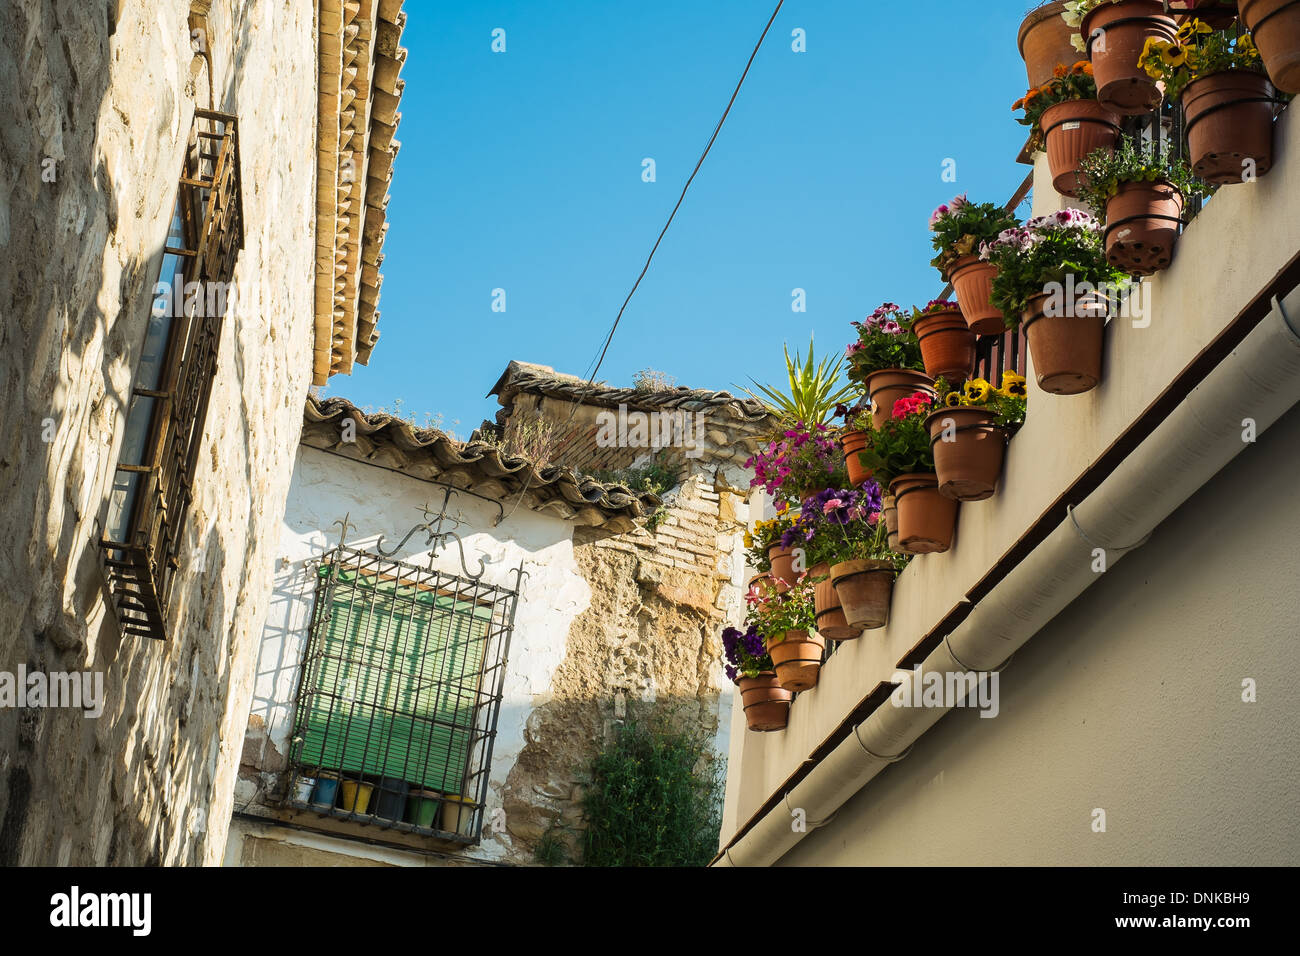 Una tipica strada nella vecchia città di Ubeda, Jaen, Spagna, il cui centro storico è un sito Patrimonio Mondiale dell'UNESCO. Foto Stock